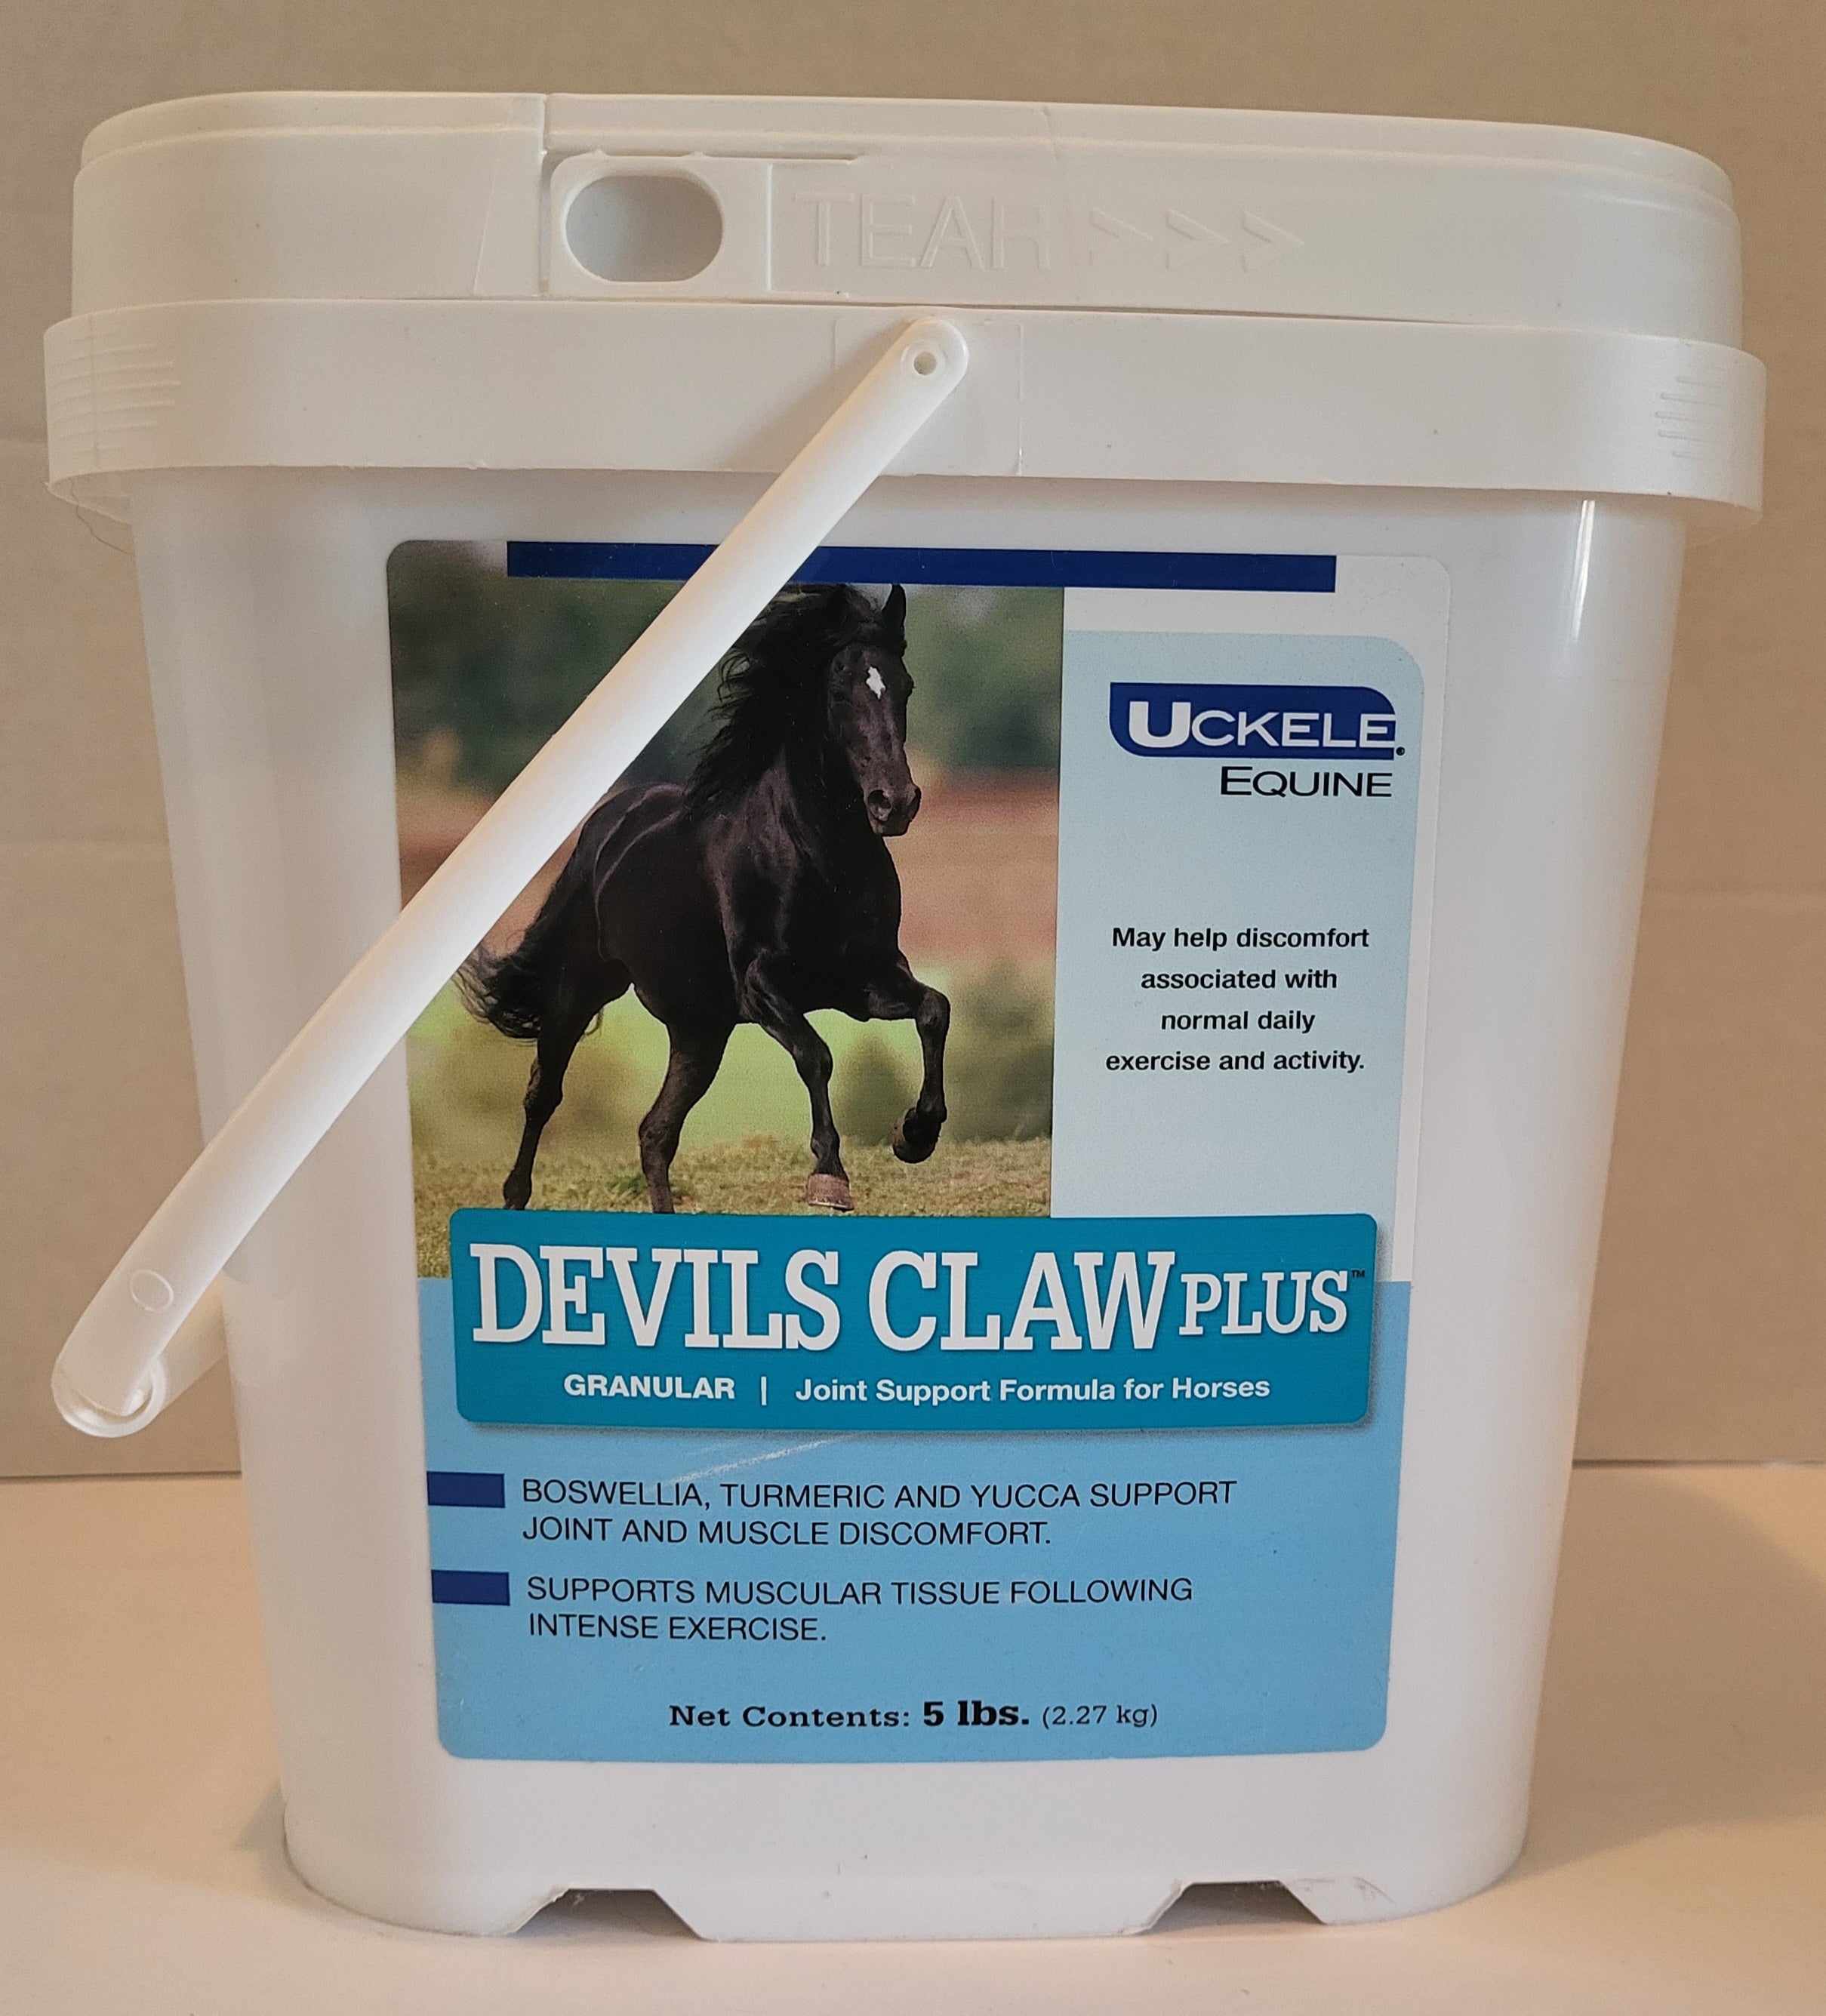 Uckele Devil's Claw Plus